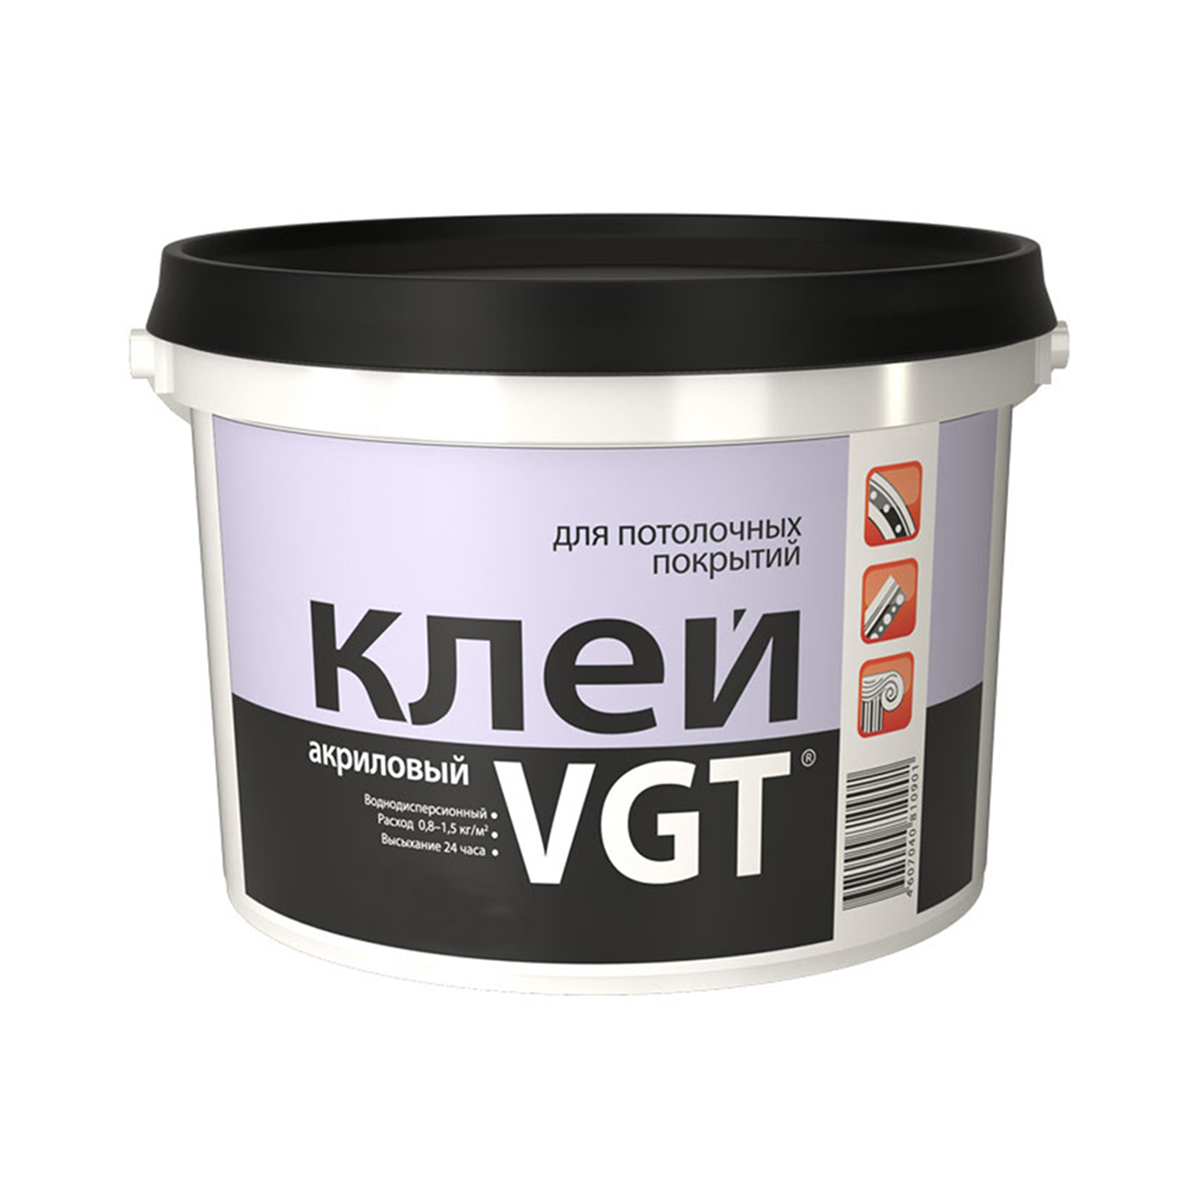 Клей для потолочных покрытий VGT, акриловый, 0,5 кг клей для напольных покрытий arlok